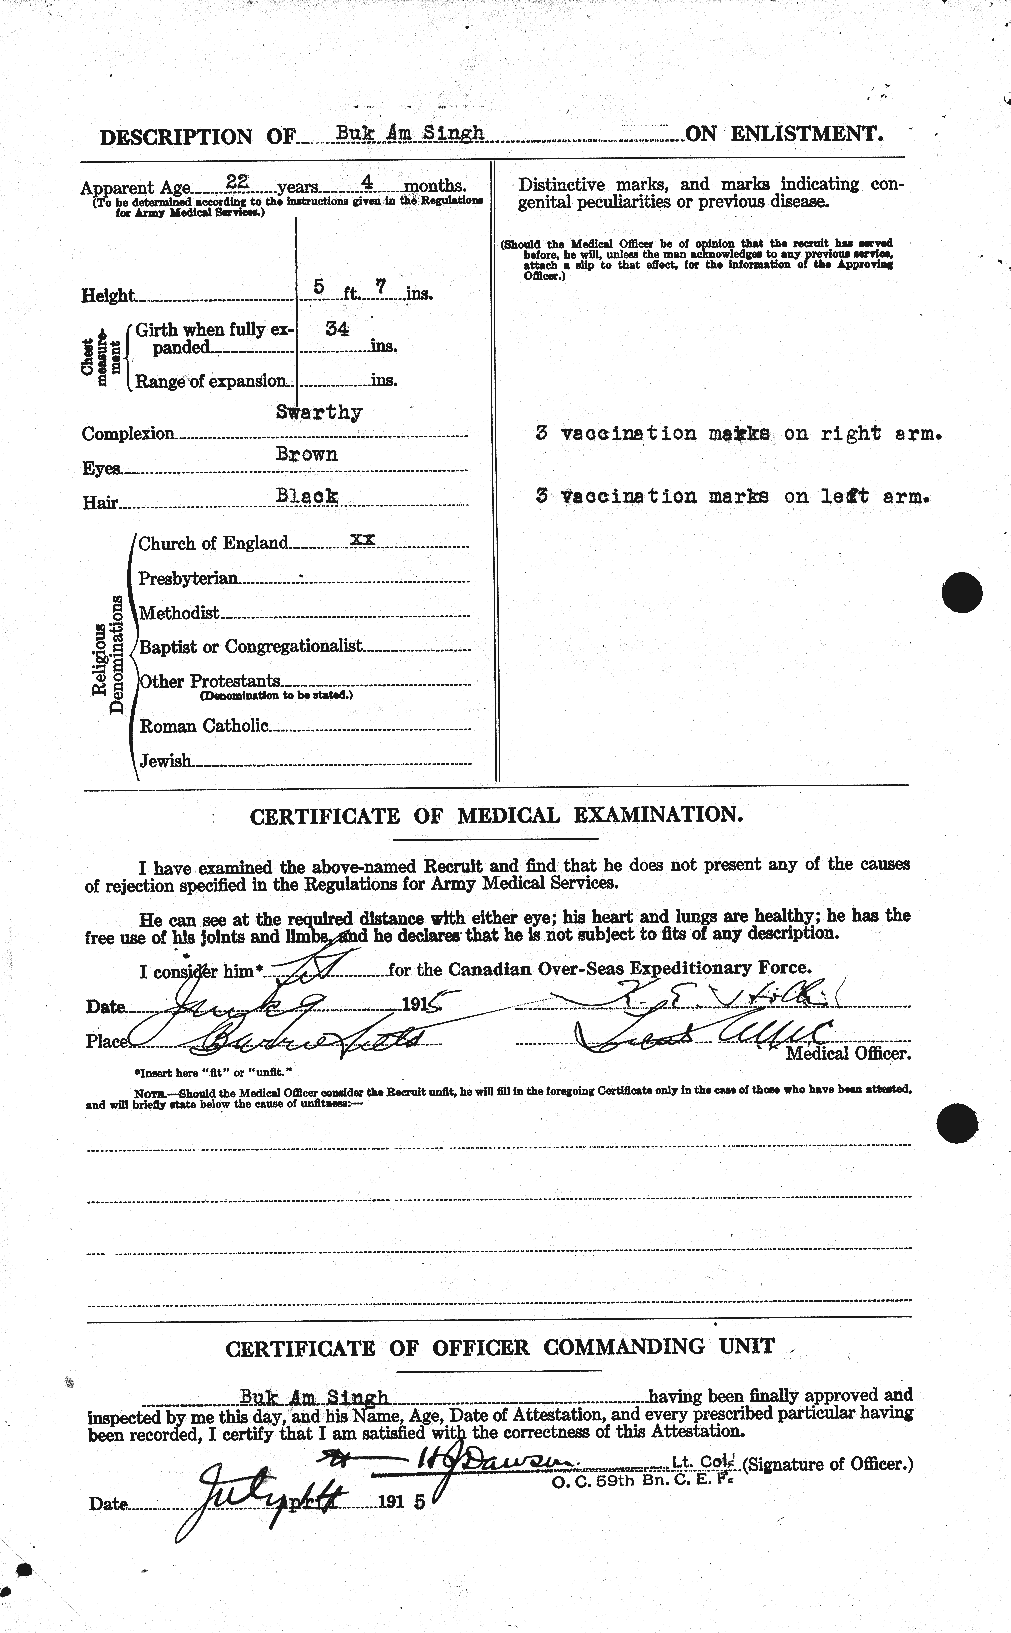 Dossiers du Personnel de la Première Guerre mondiale - CEC 100699b